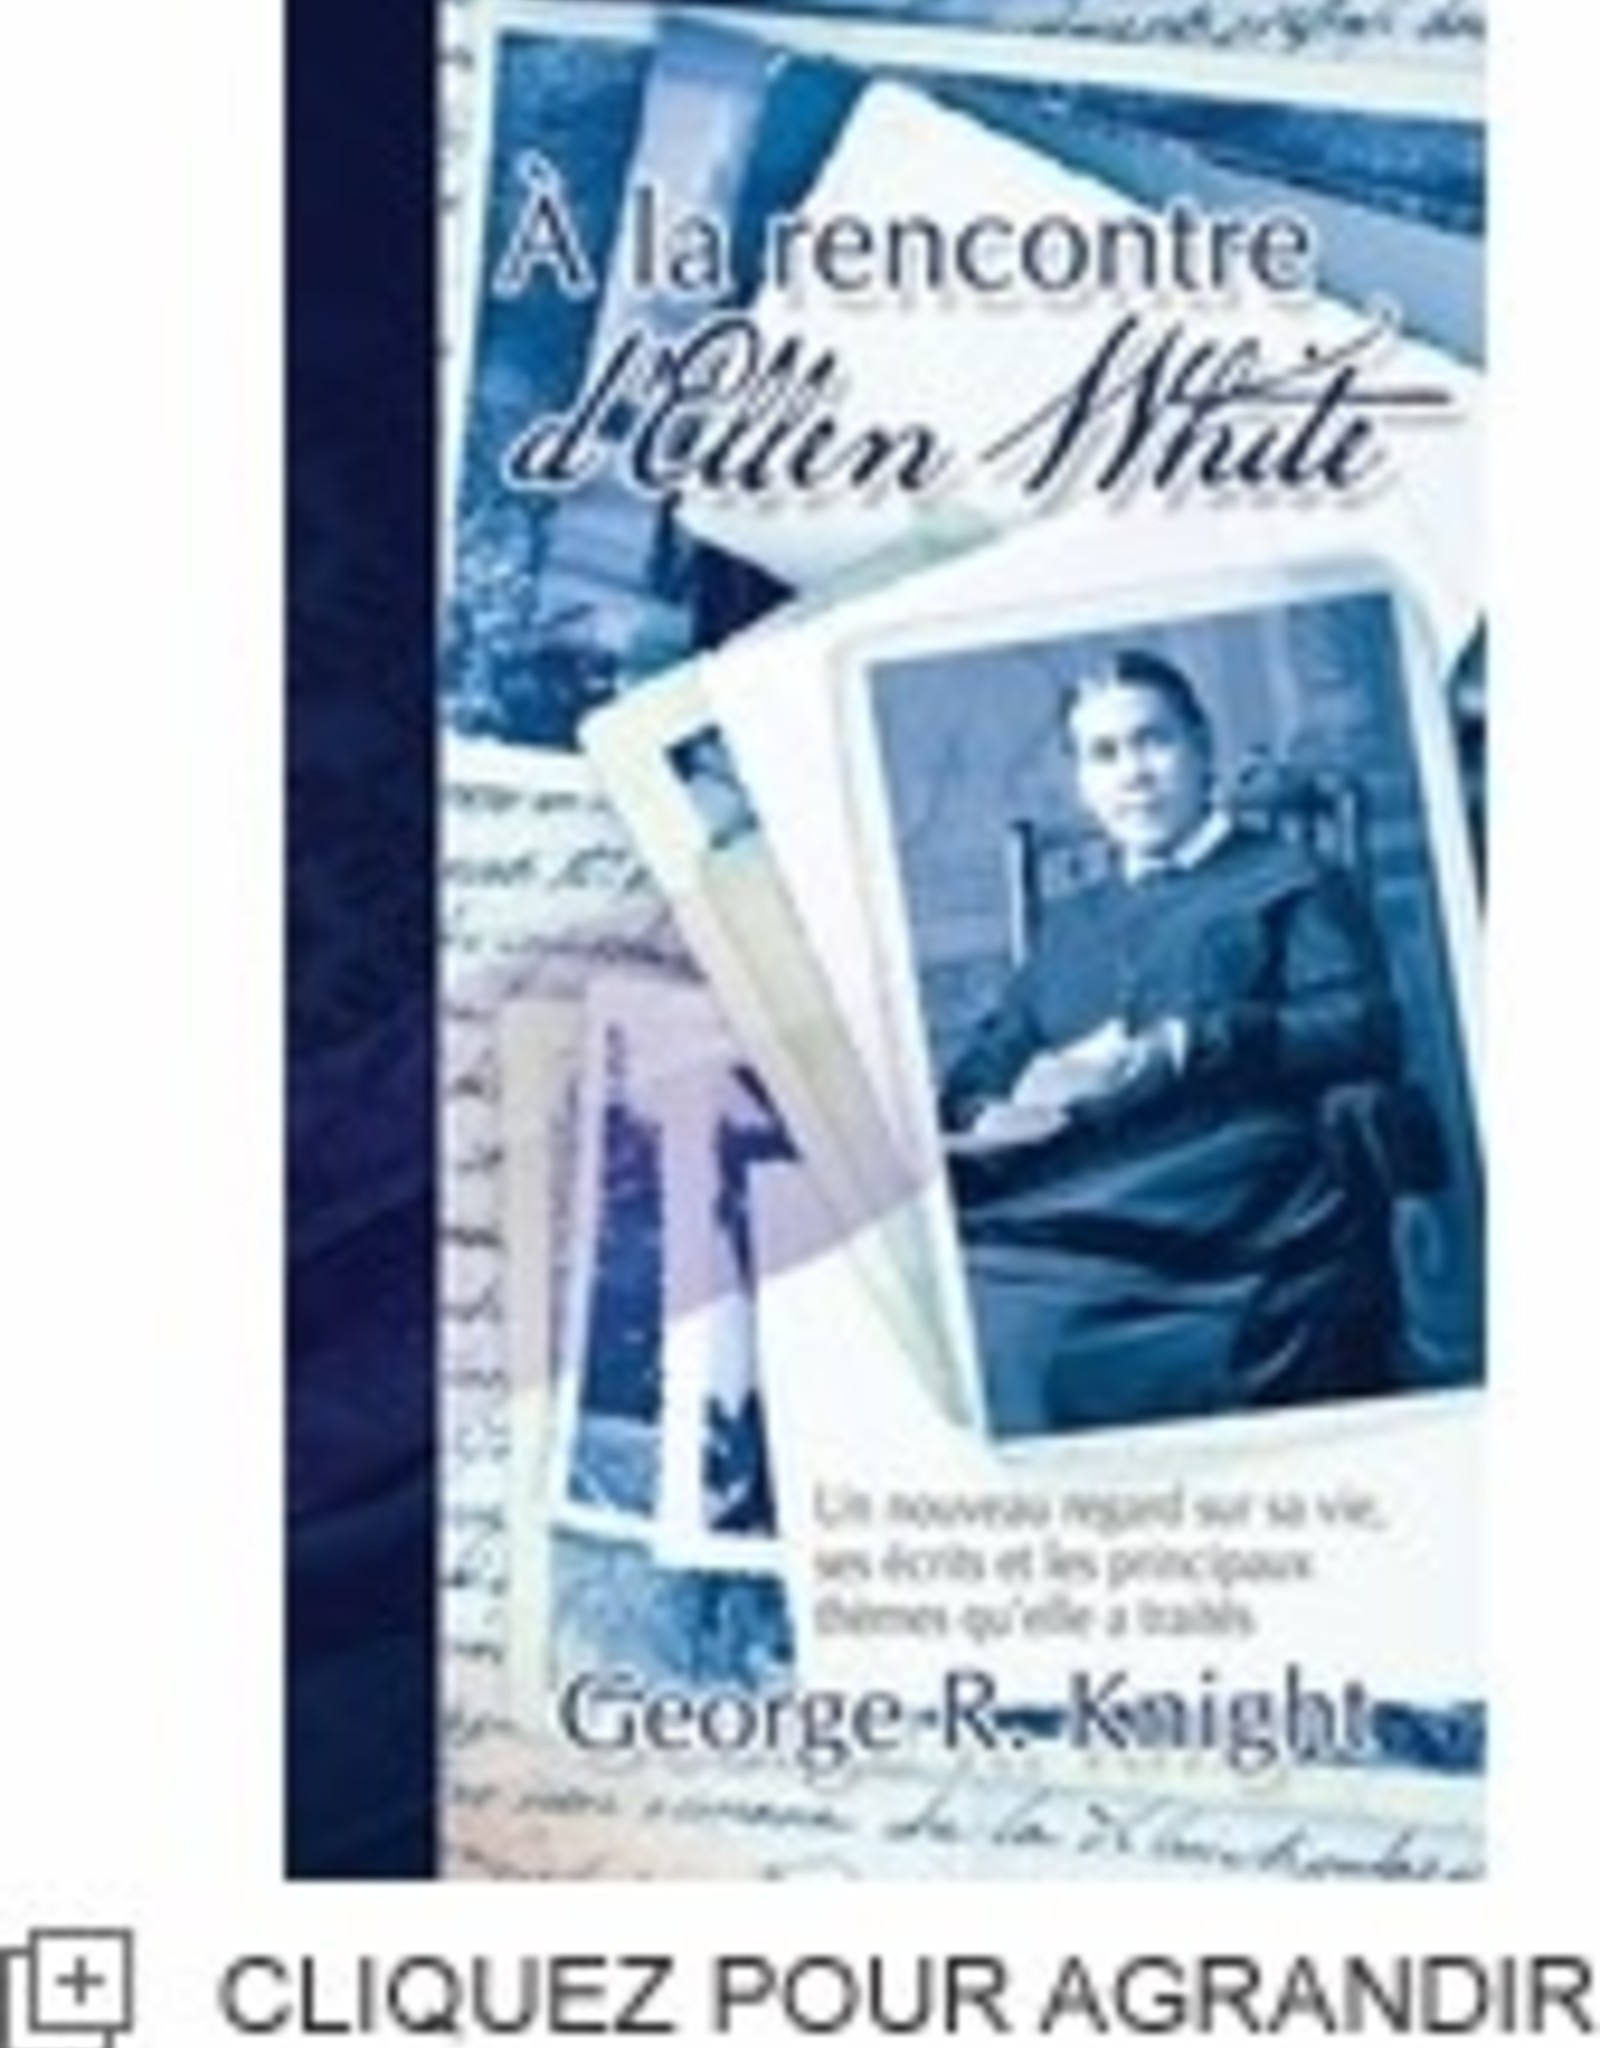 George R. Knight À la rencontre d'Ellen White